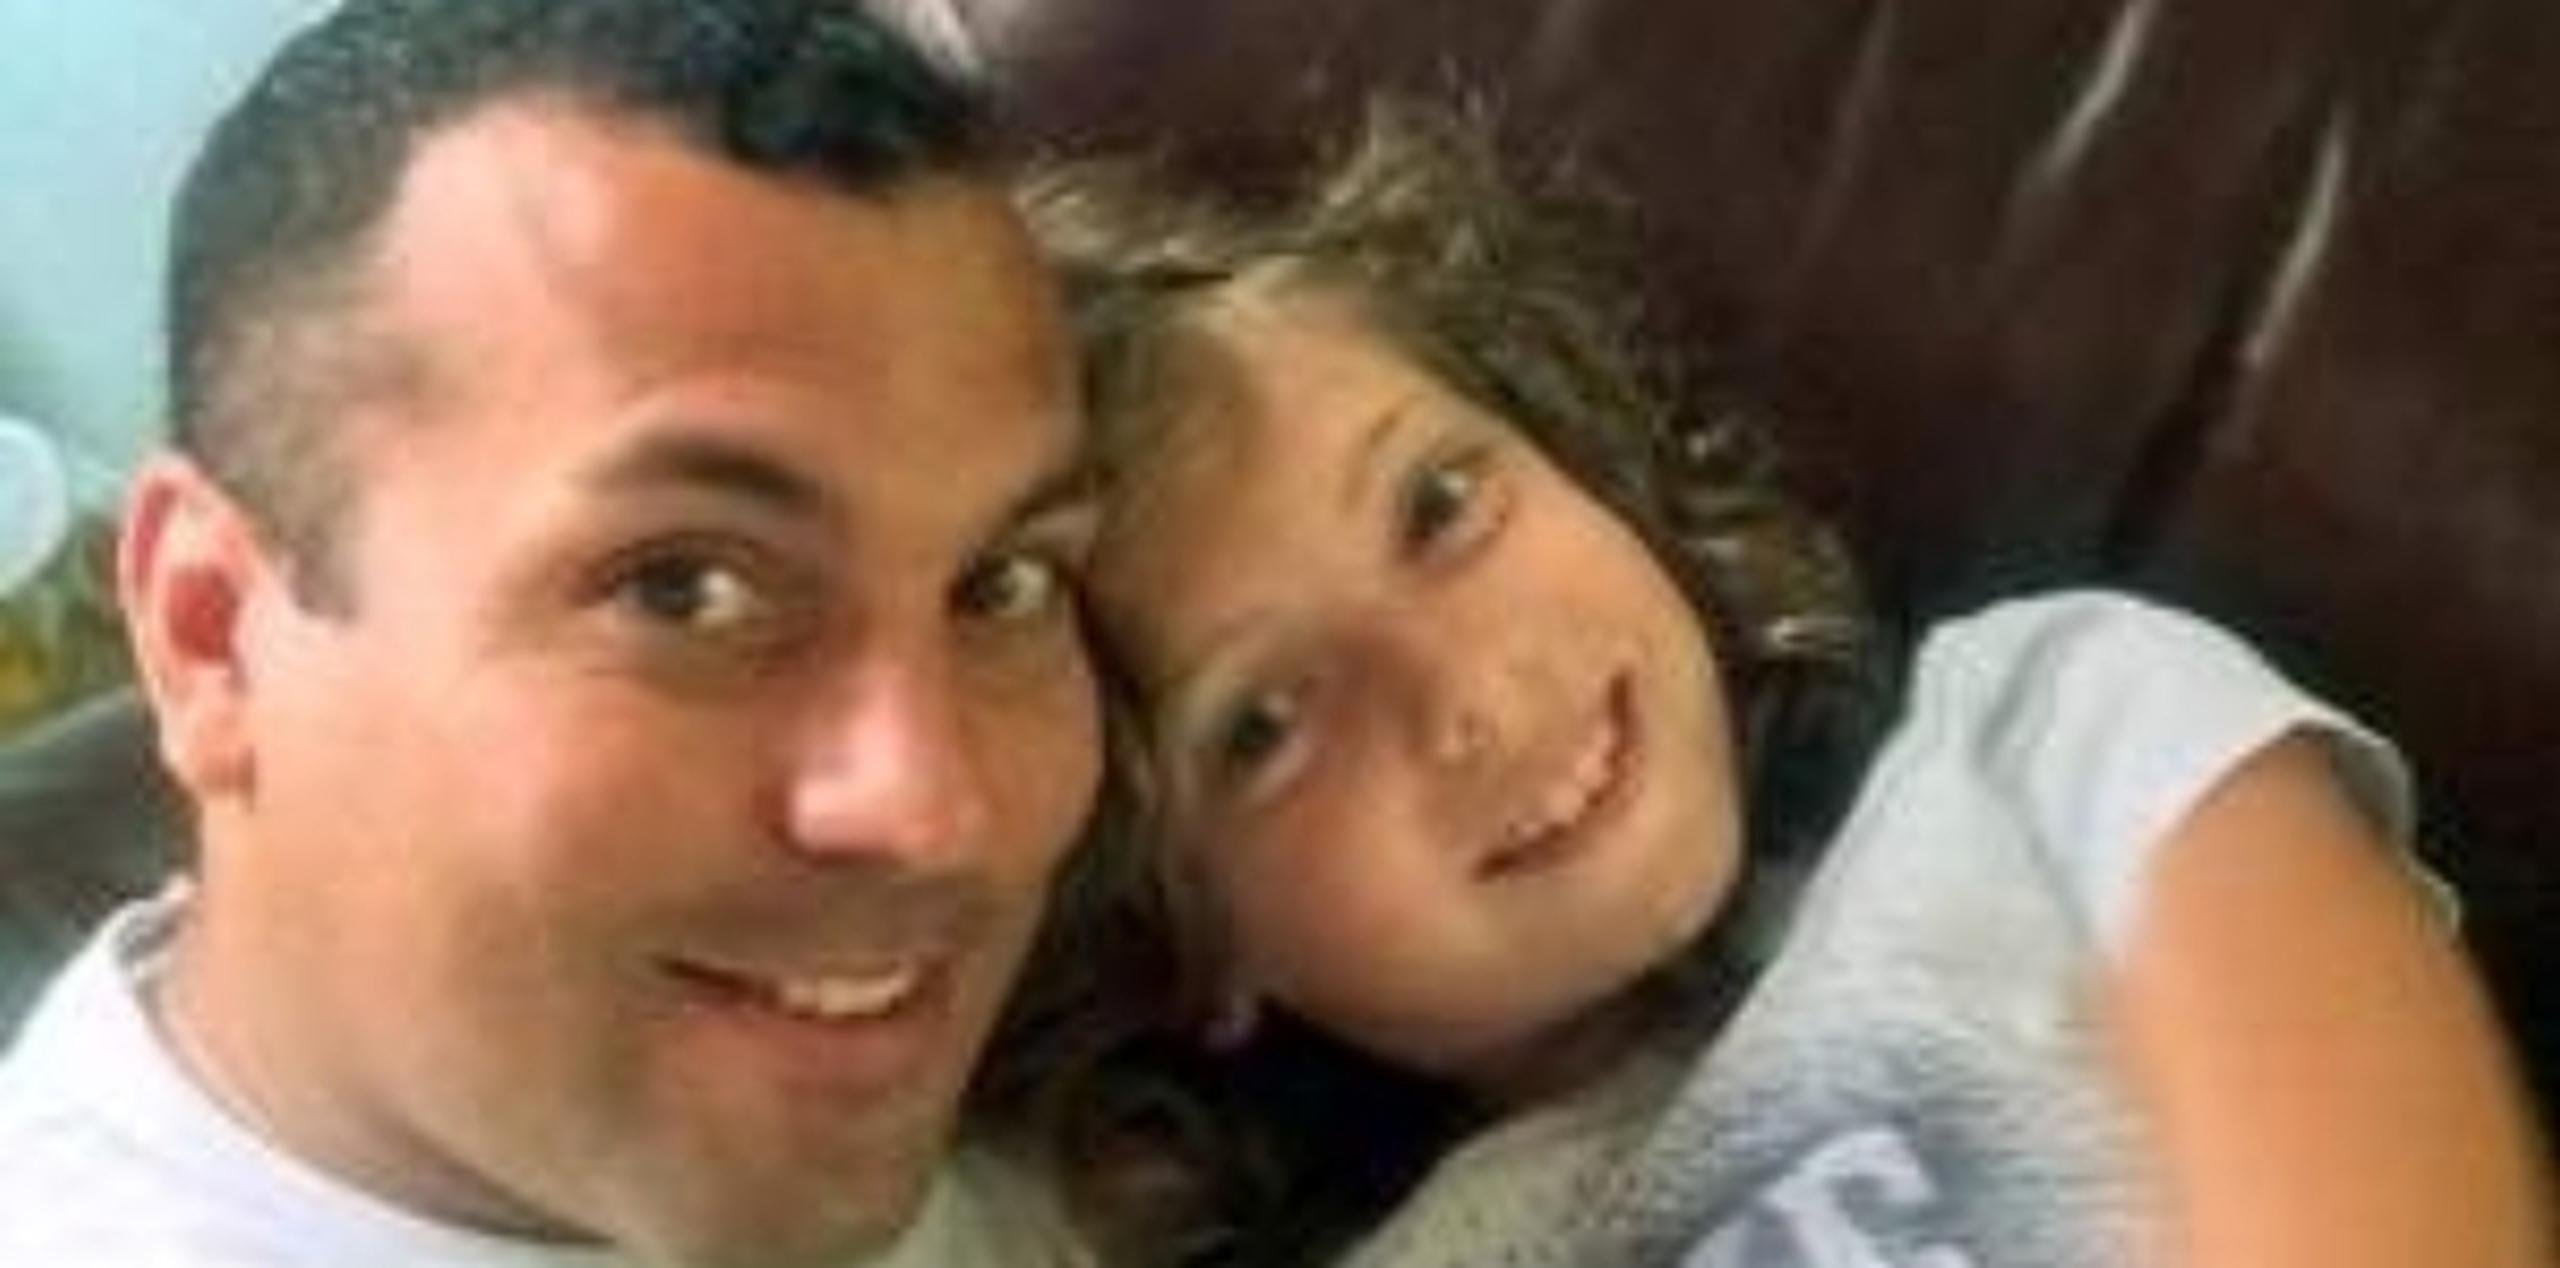 El soldado Ommy Irizarry y su hija Oceana fallecieron a consecuencia de las heridas que les ocasionó una avioneta que les cayó encima cuando disfrutaban en la playa, el pasado 27 de junio. (Archivo)